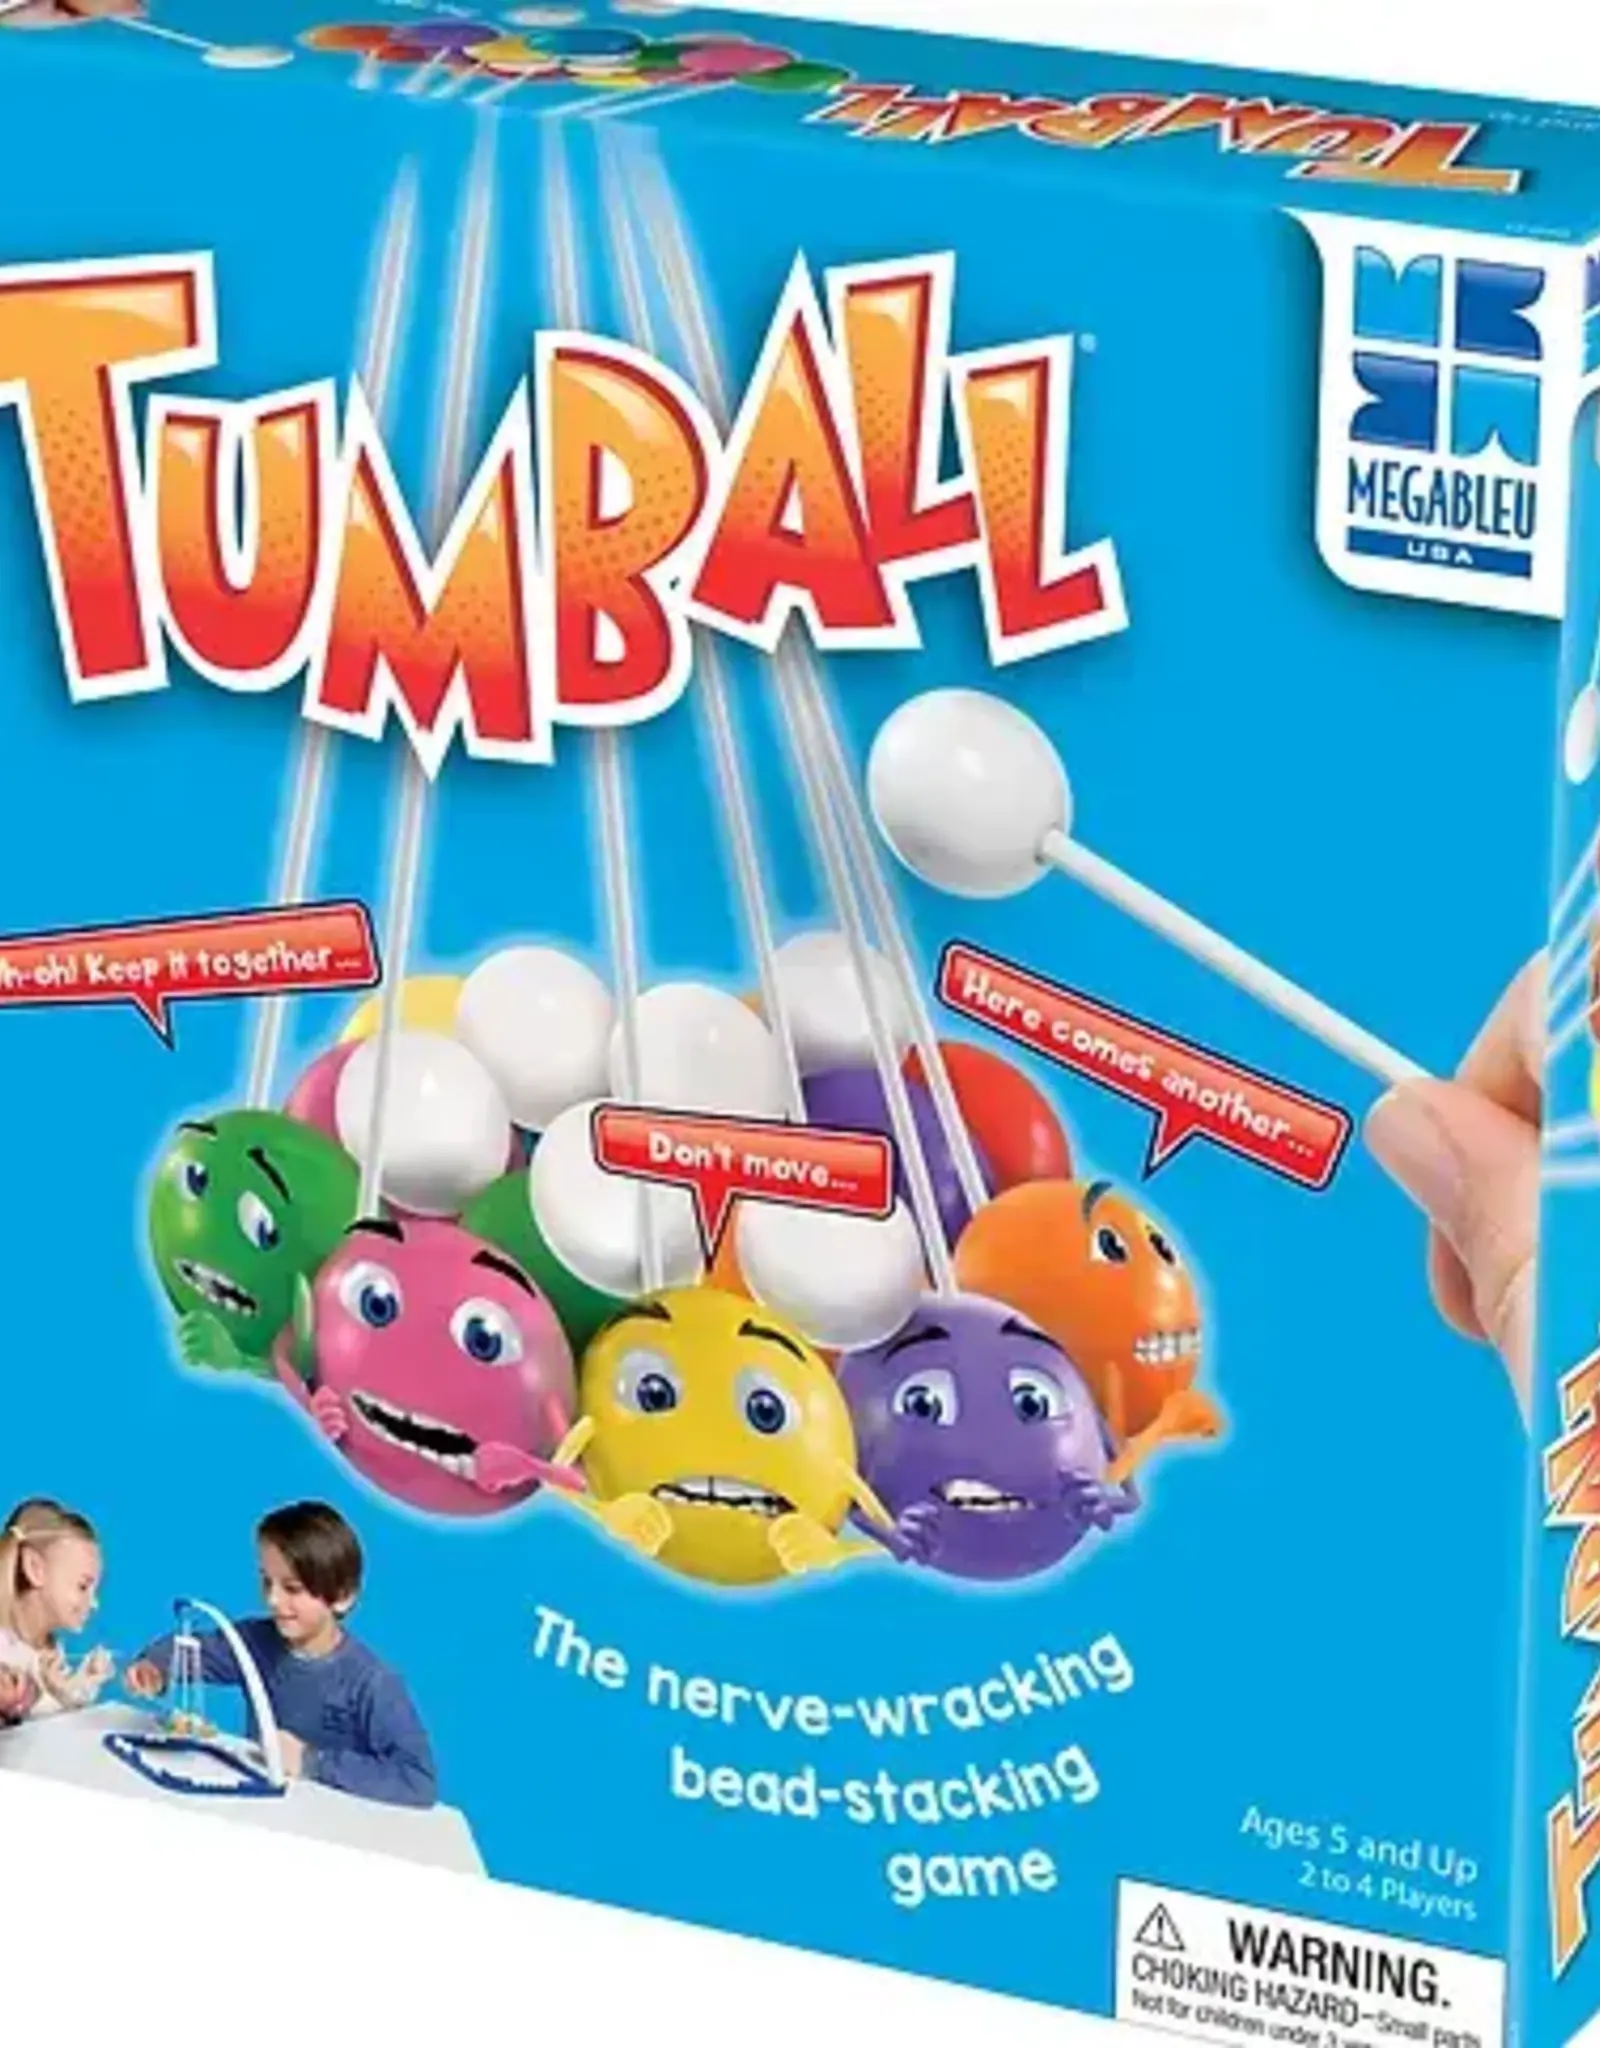 University Games Tumball